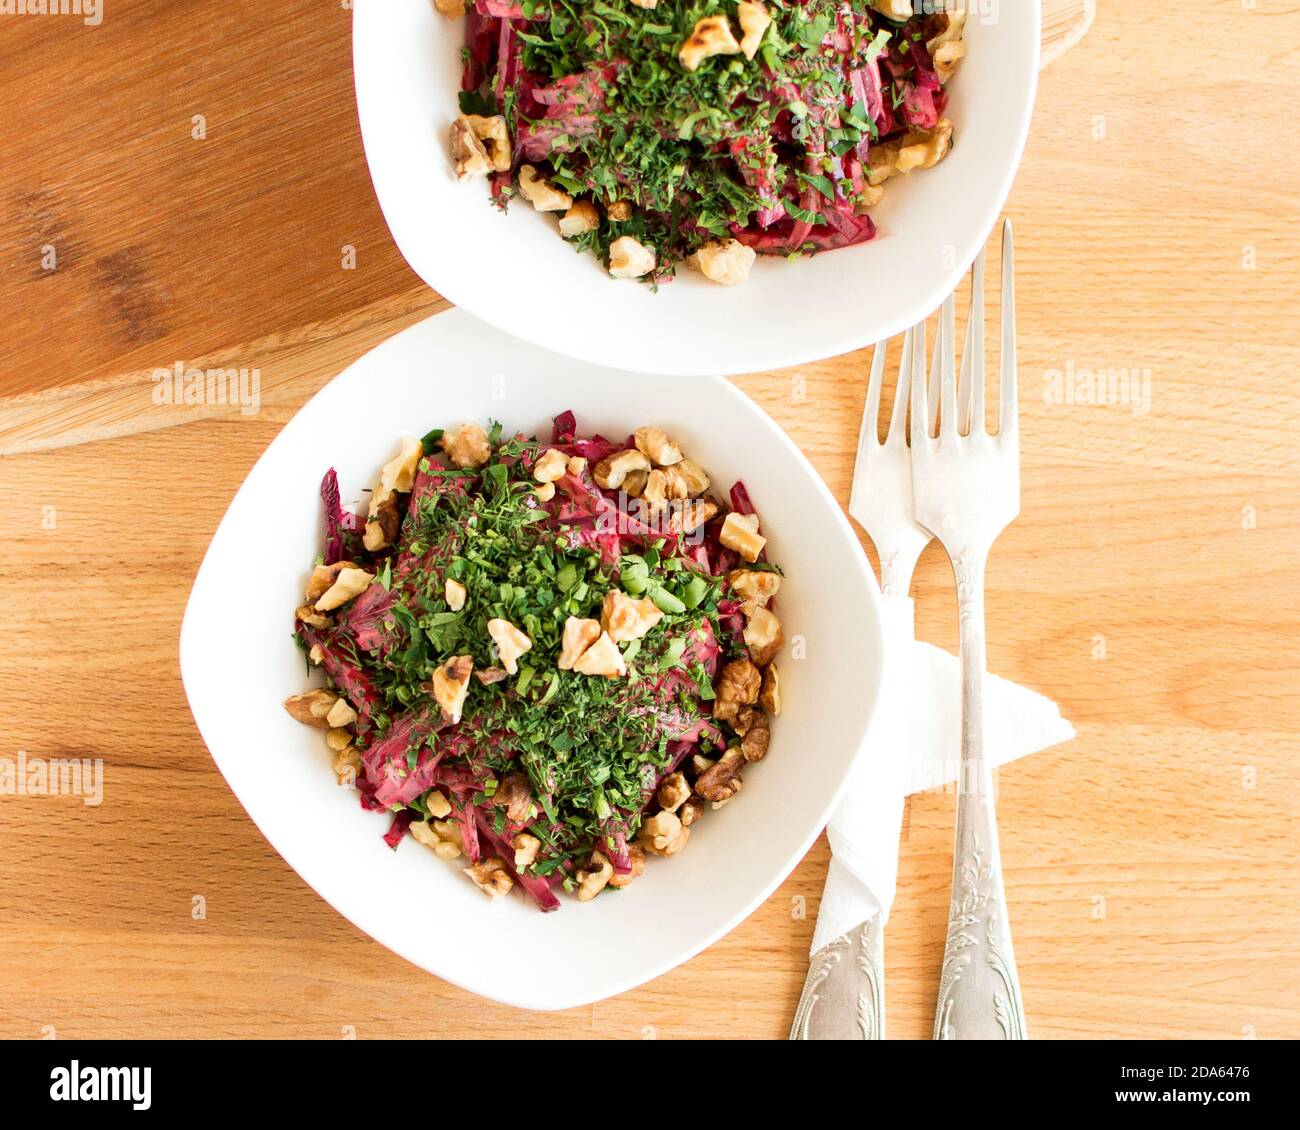 Salat mit gekochten Rüben und Walnüssen, verziert mit Kräutern. Blick von oben. Schöne Präsentation des Gerichts. Stockfoto